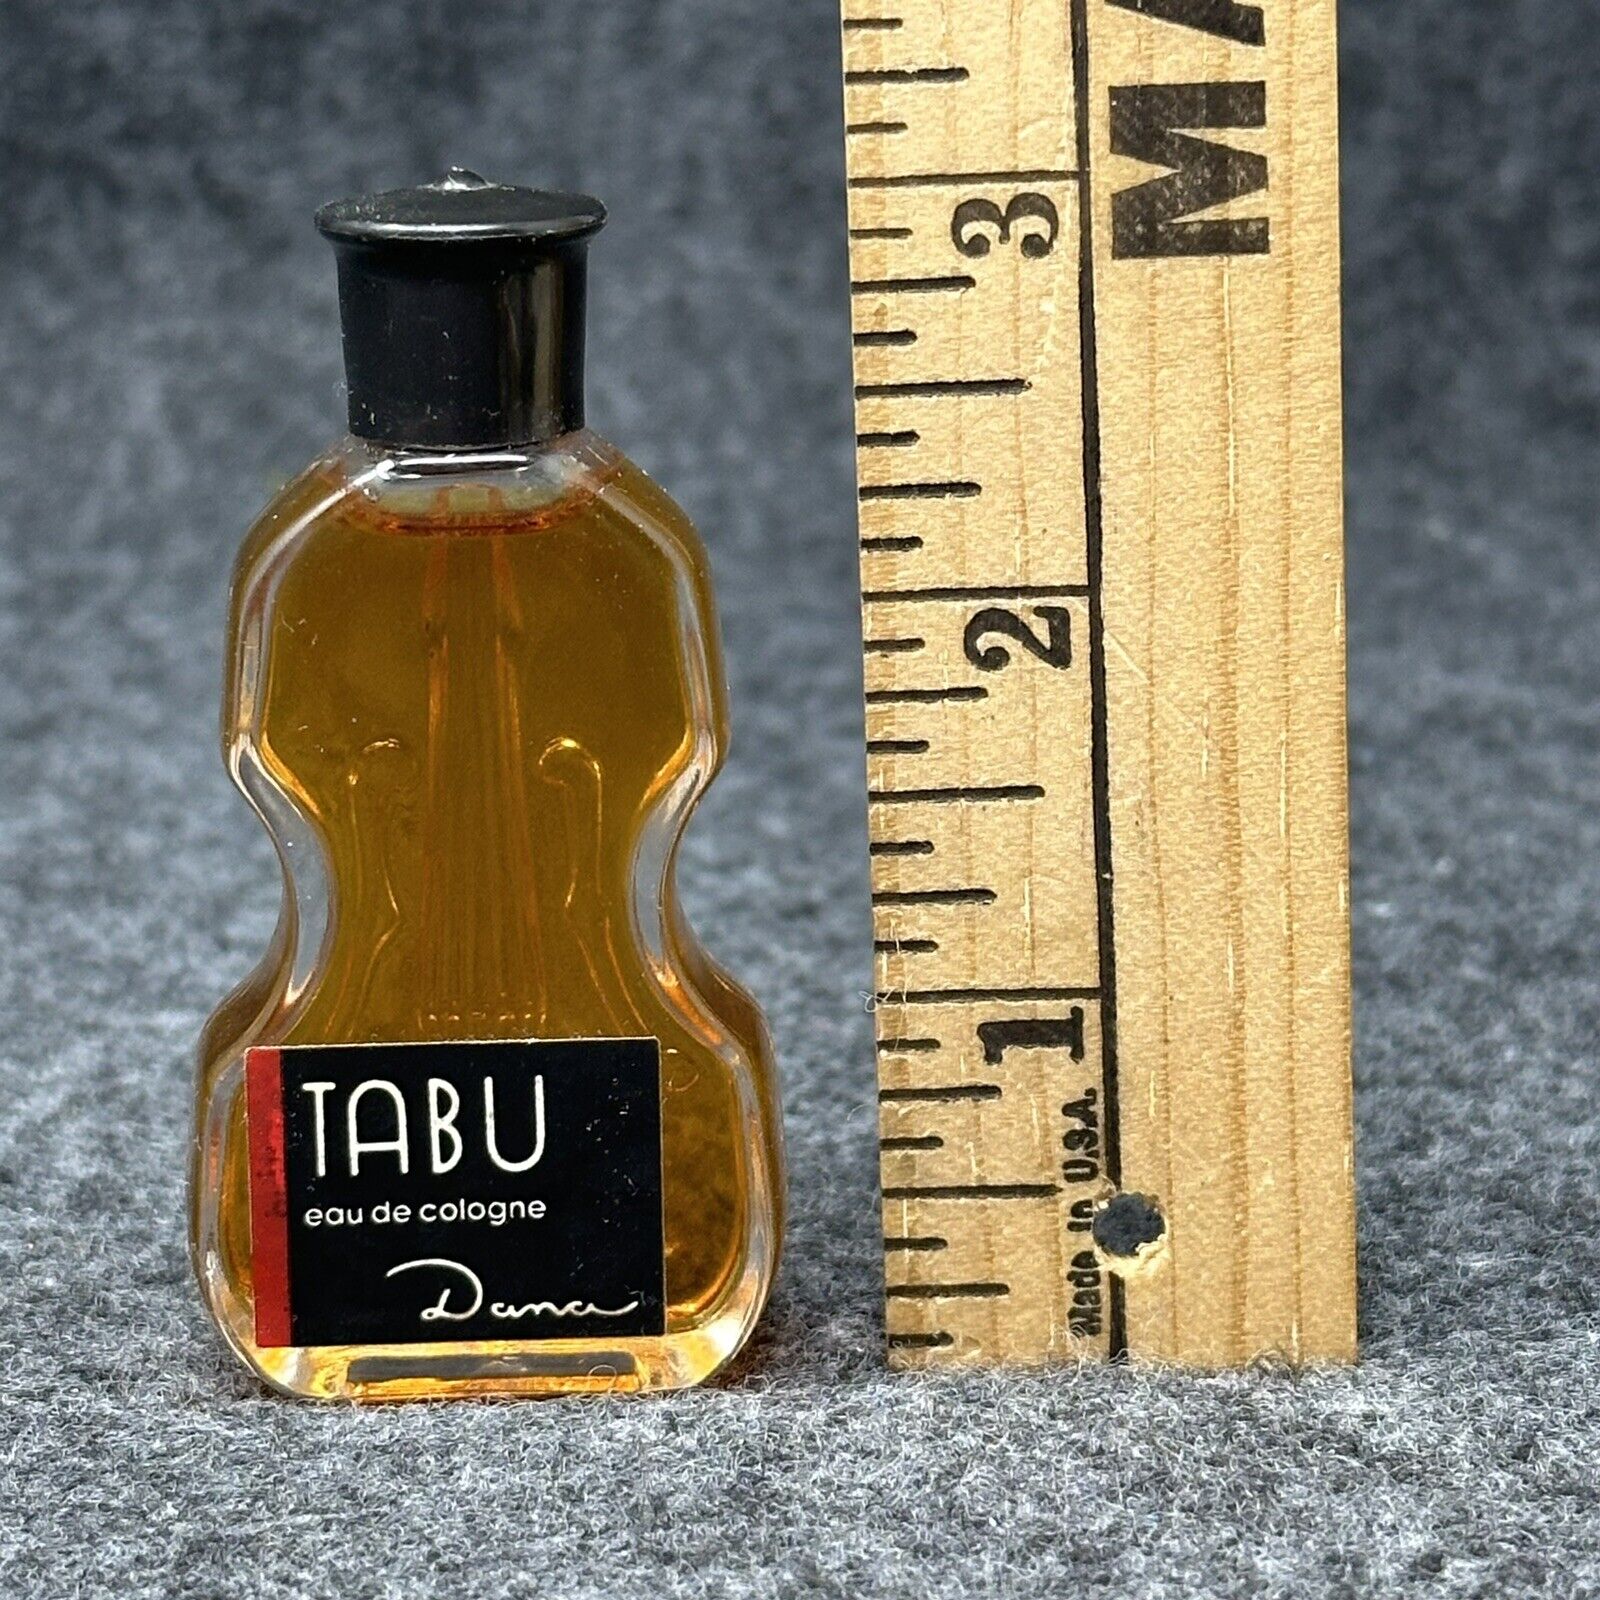 TABU eau de cologne Dana Vintage Perfume Bottle Cello Violin Sample Size Vanity